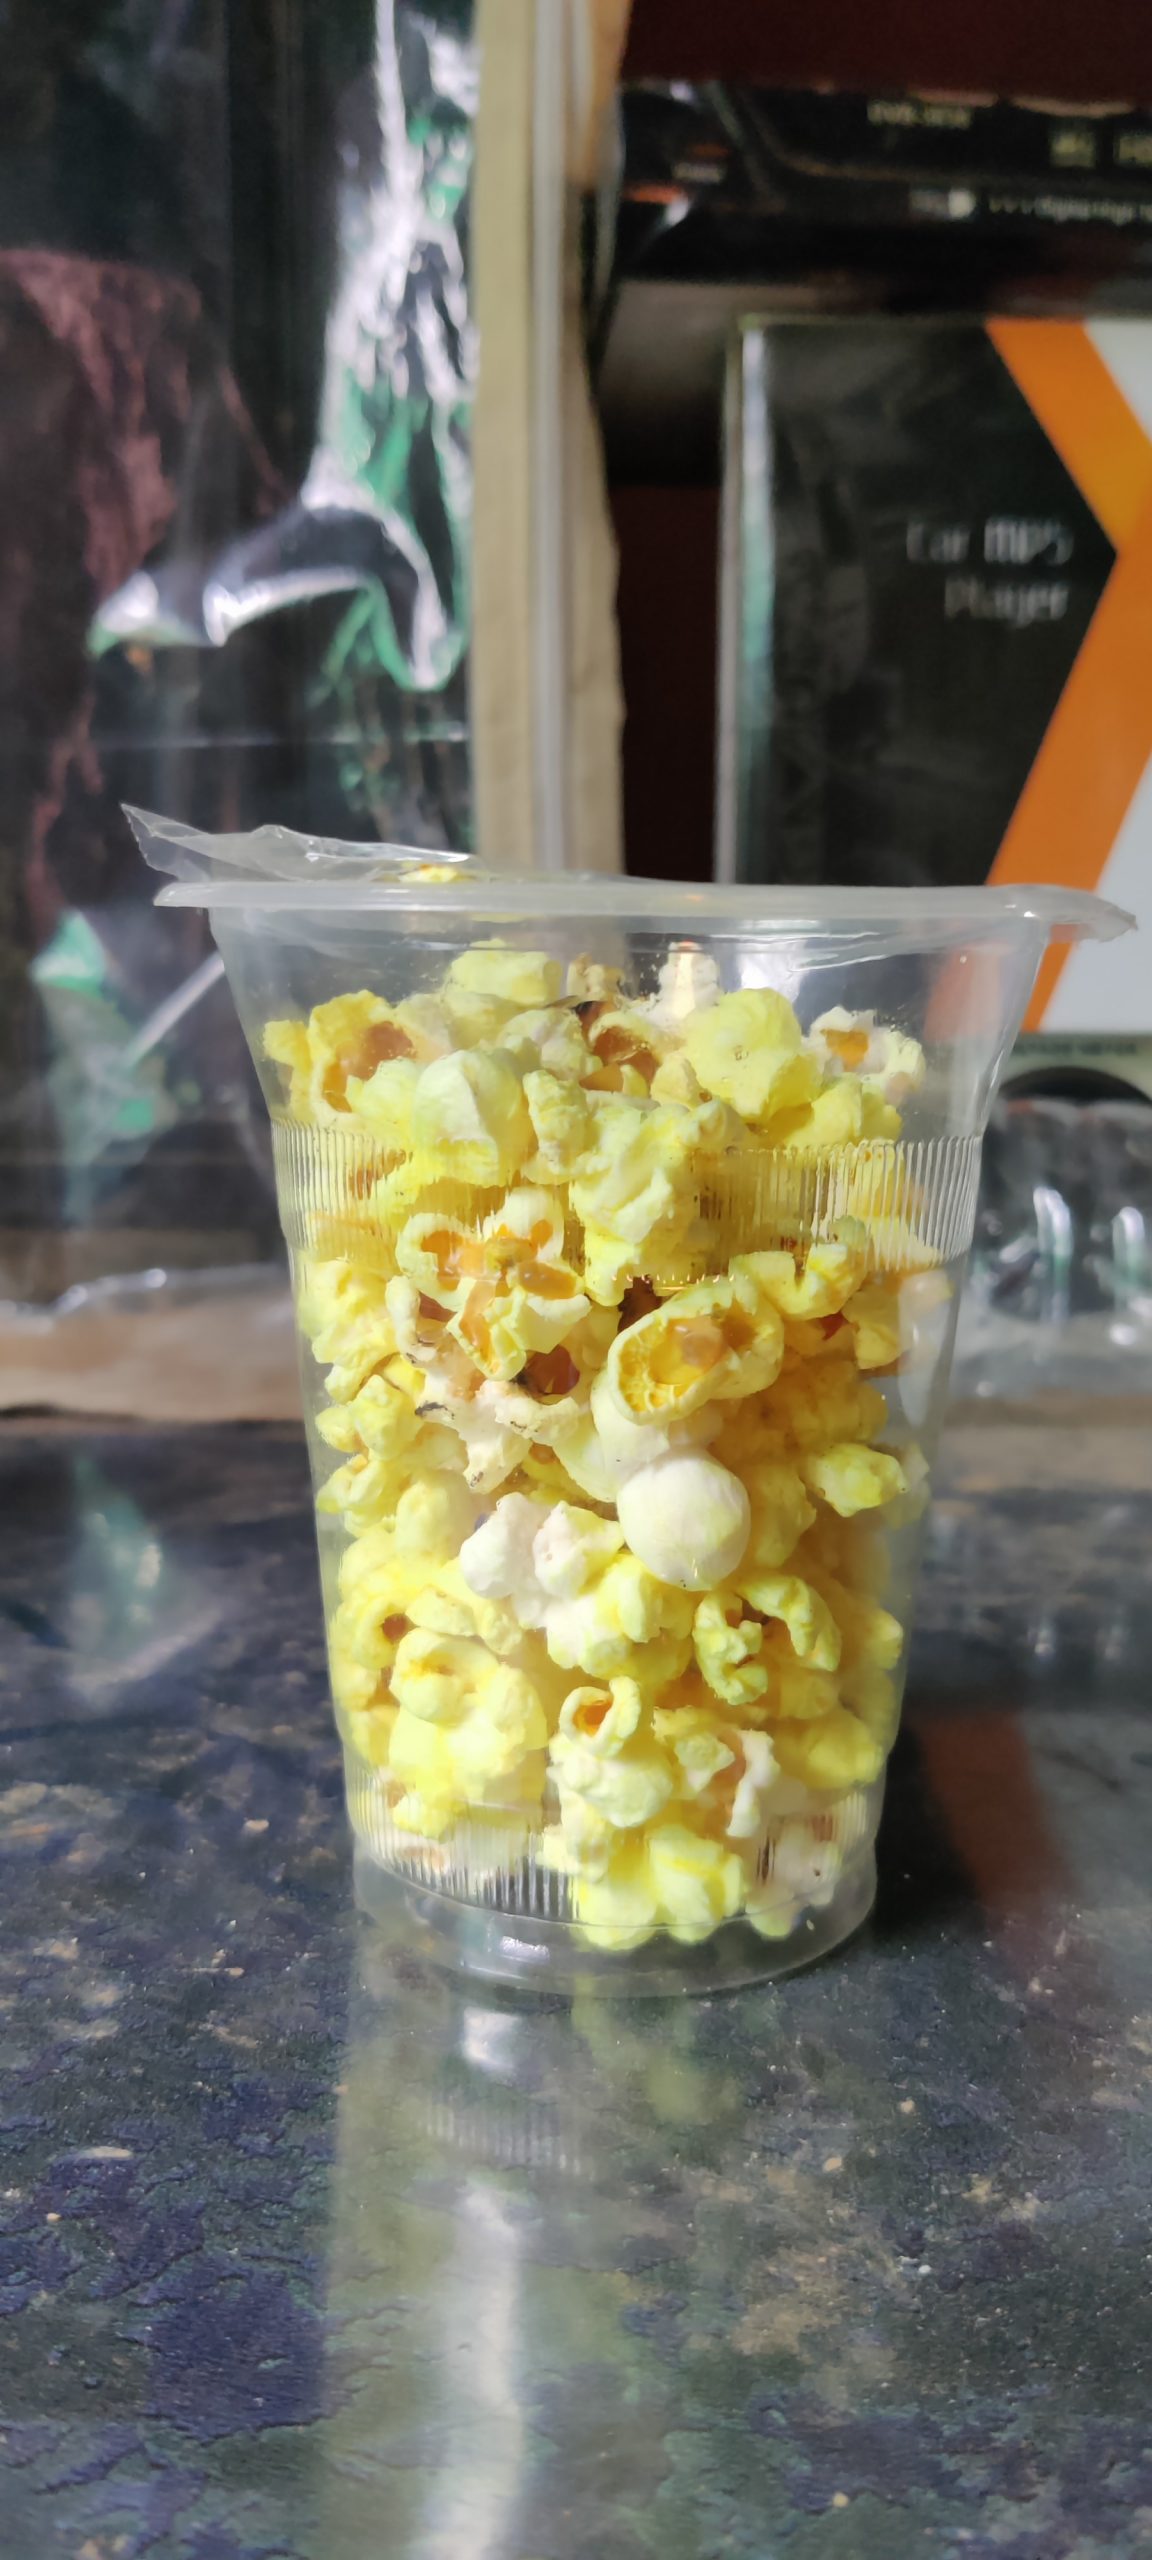 Popcorn in a plastic glass